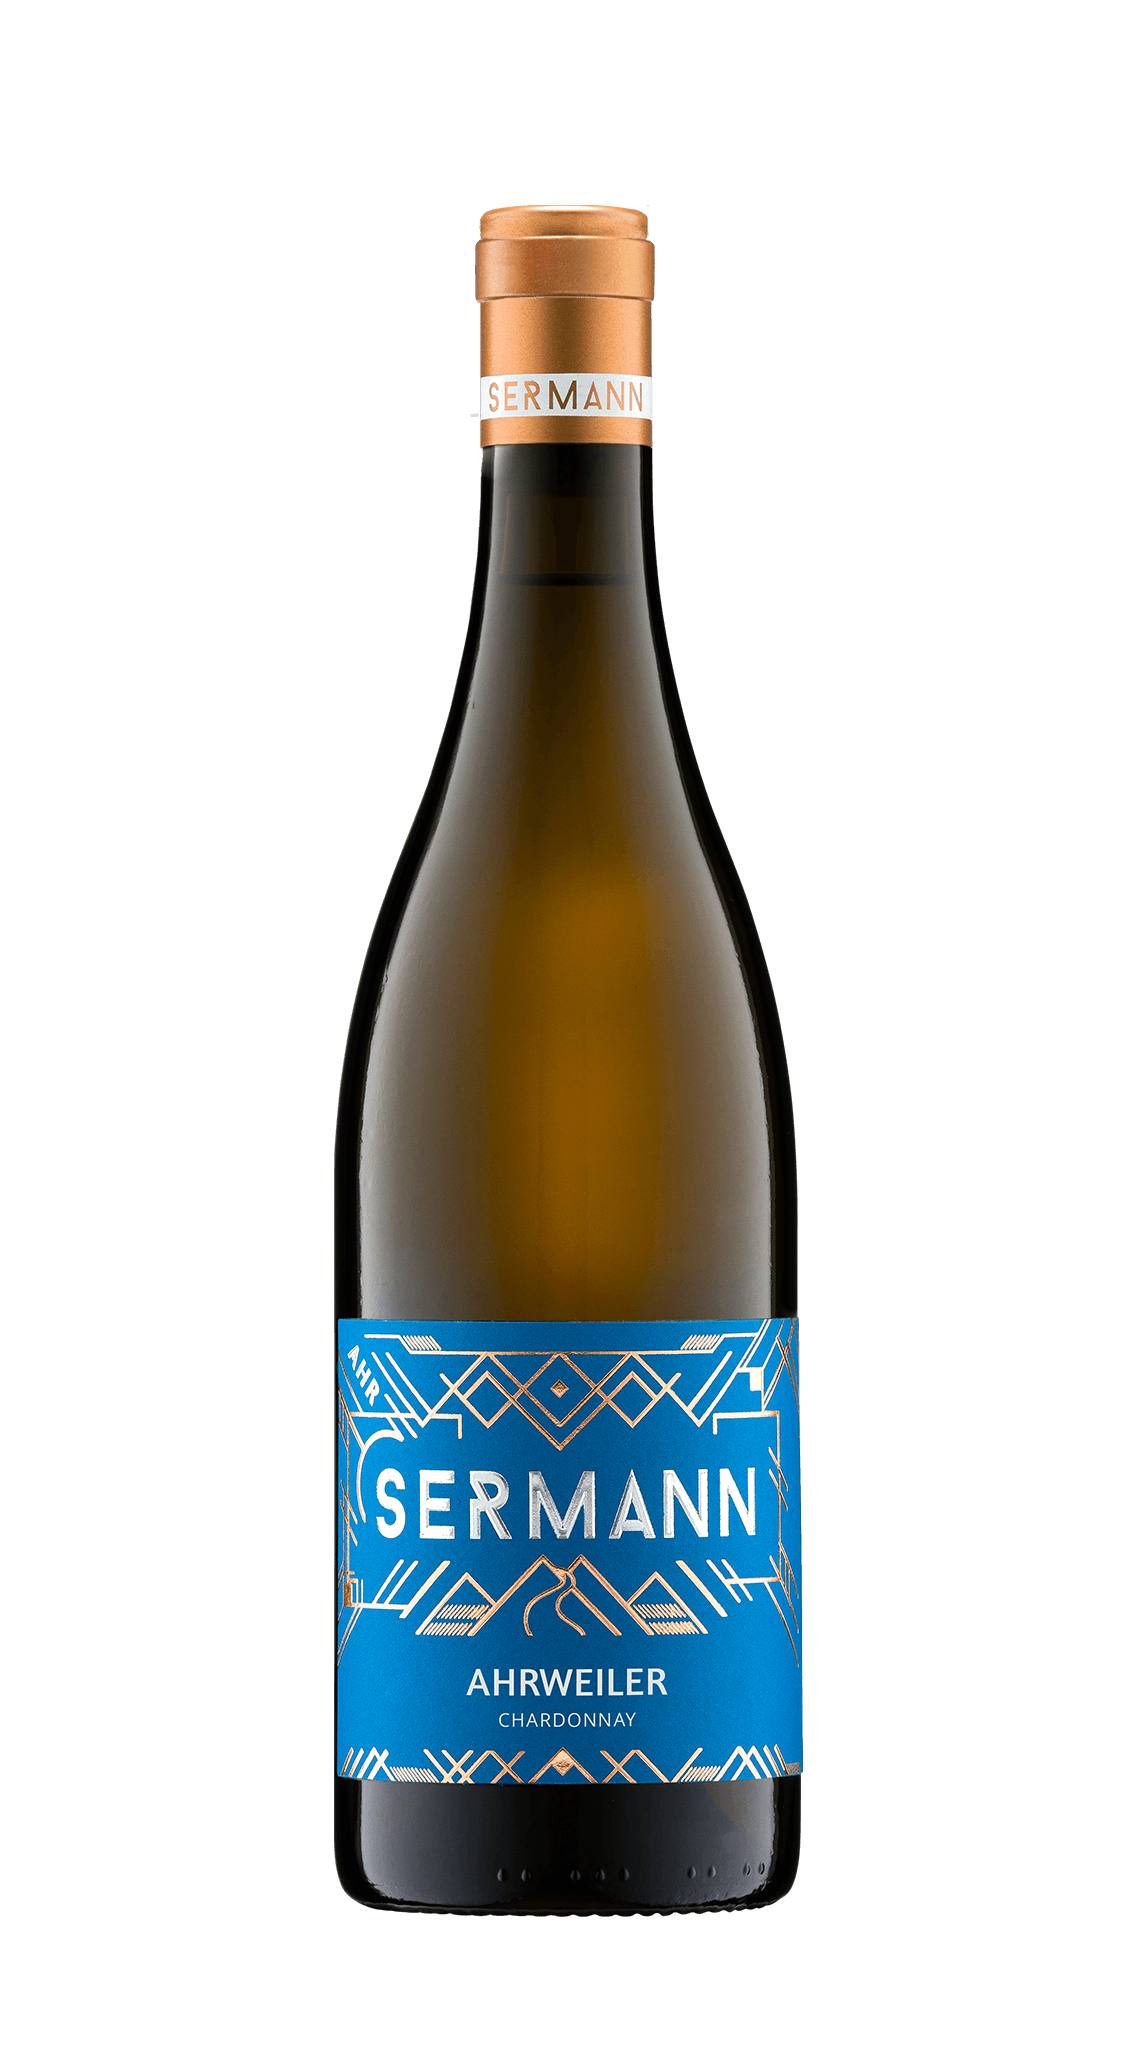 Sermann Ahrweiler Chardonnay